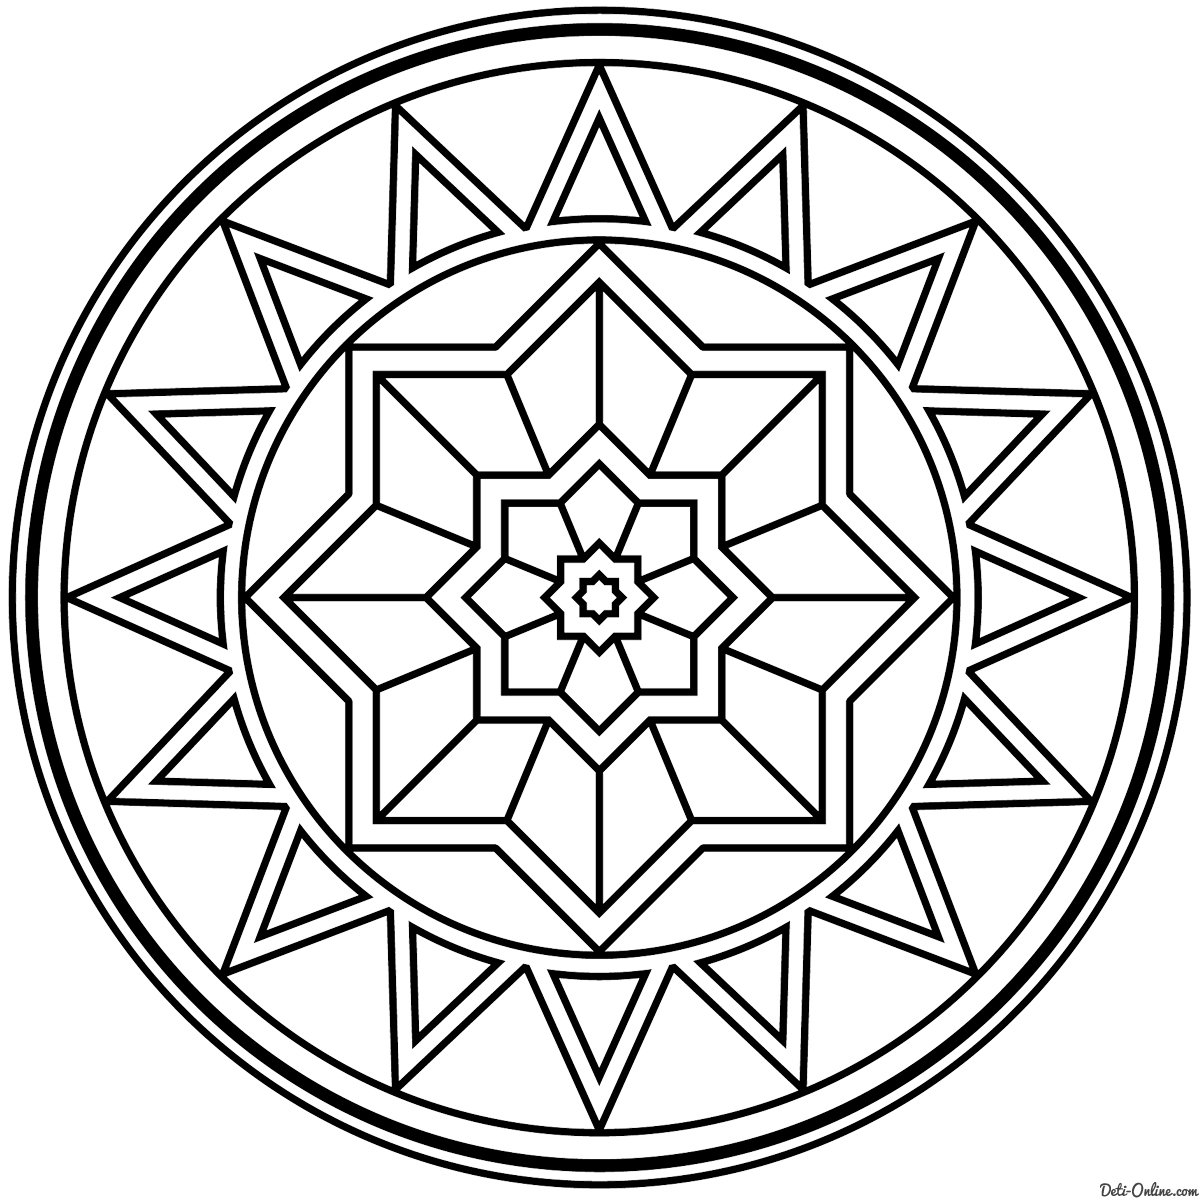 Интегративный урок «Мандалы» по теме «Окружность и круг»